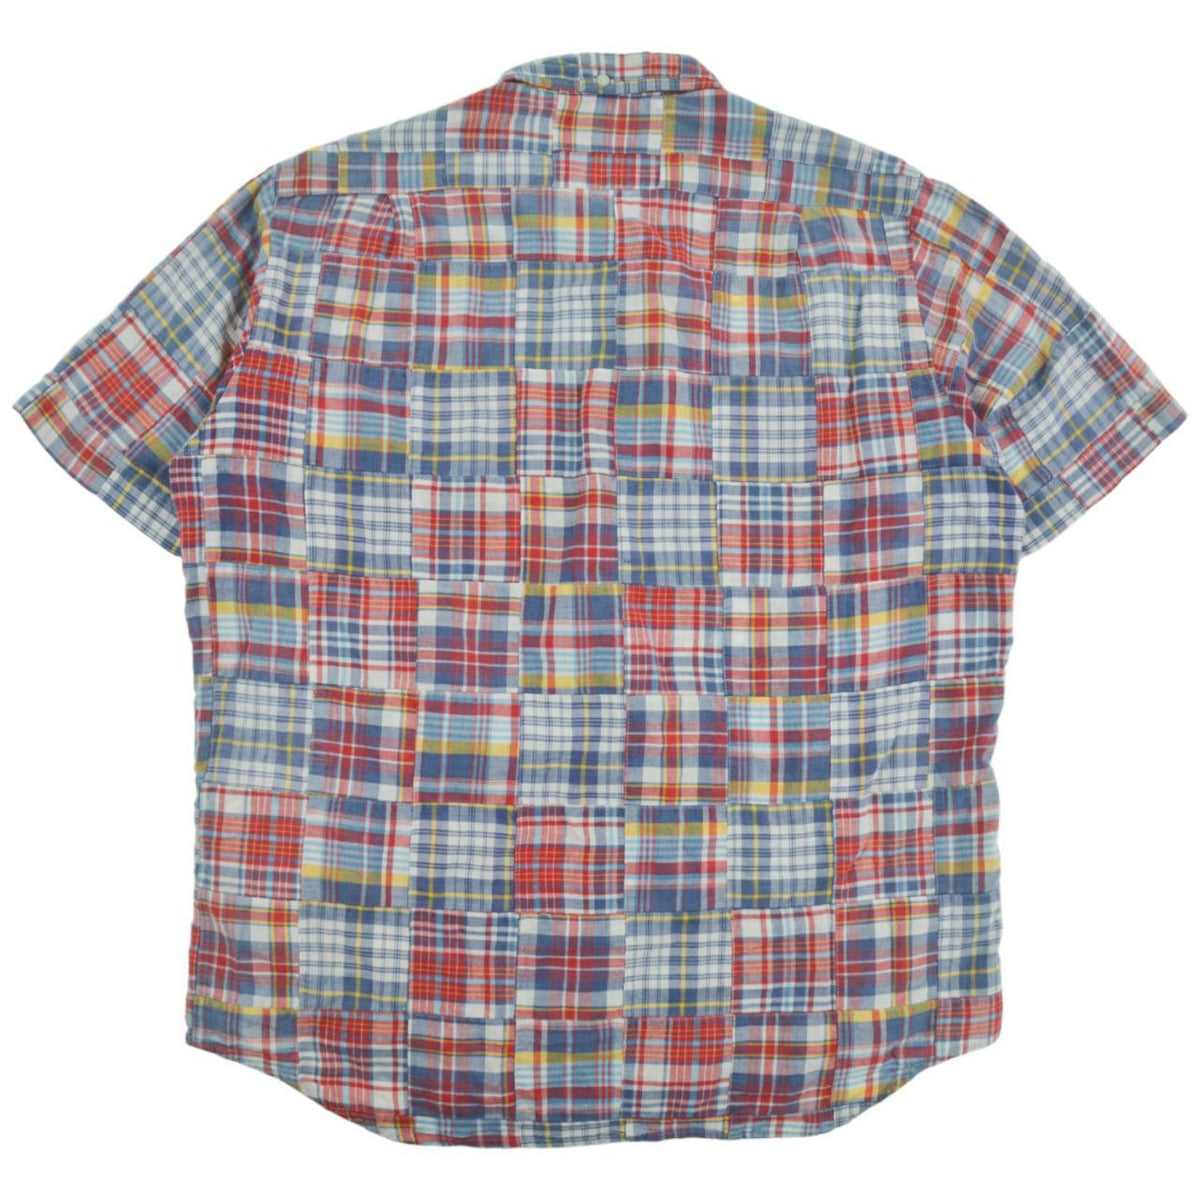 Vintage BAPE Patchwork Short Sleeve Shirt Size XL